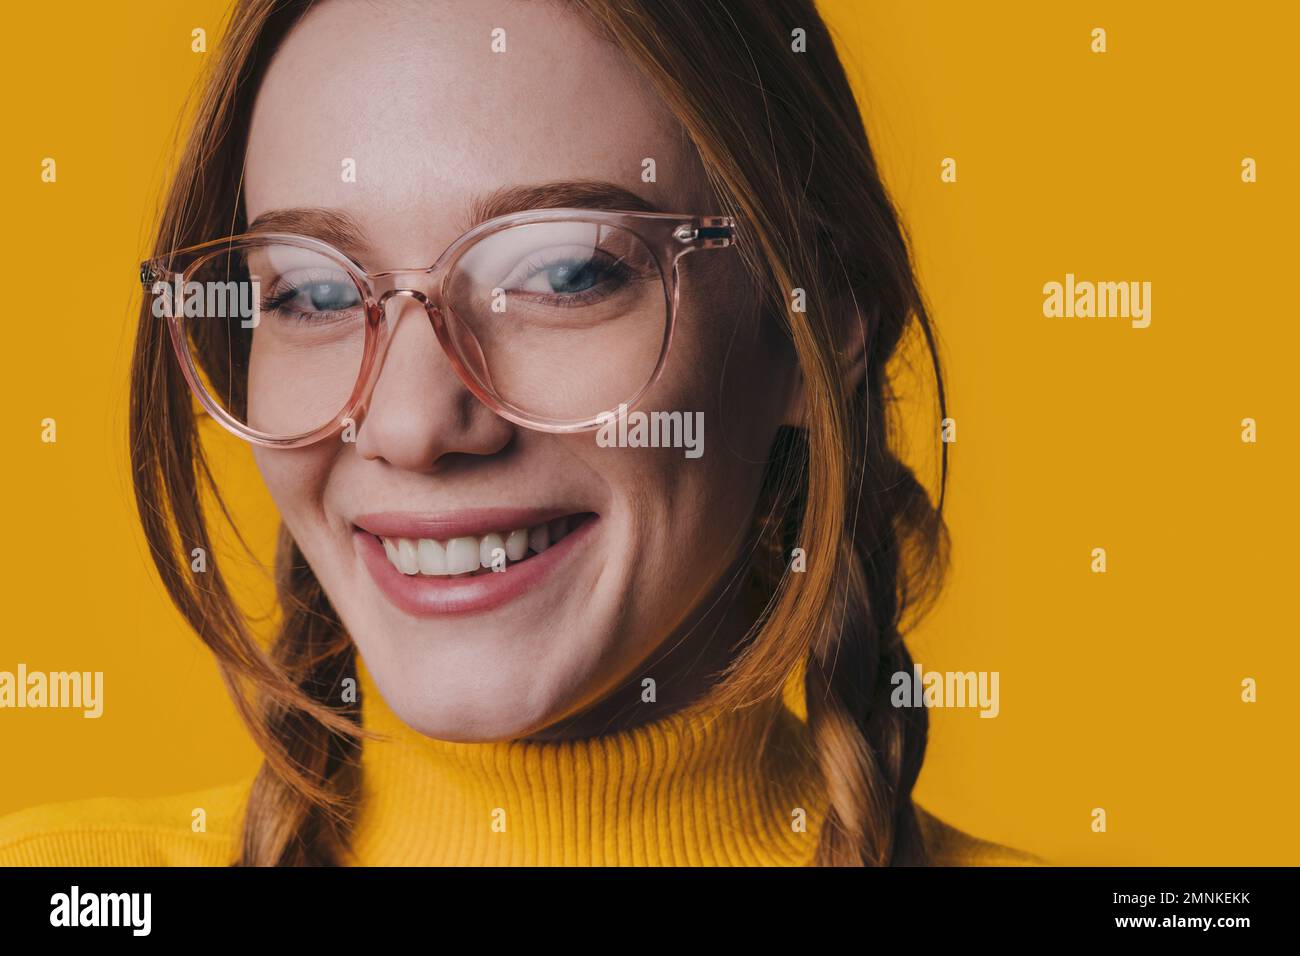 Foto einer fröhlichen jungen, fröhlichen Frau, die eine lächelnde Brille trägt, ein Gesicht mit guter Laune, isoliert auf gelbem Hintergrund Stockfoto